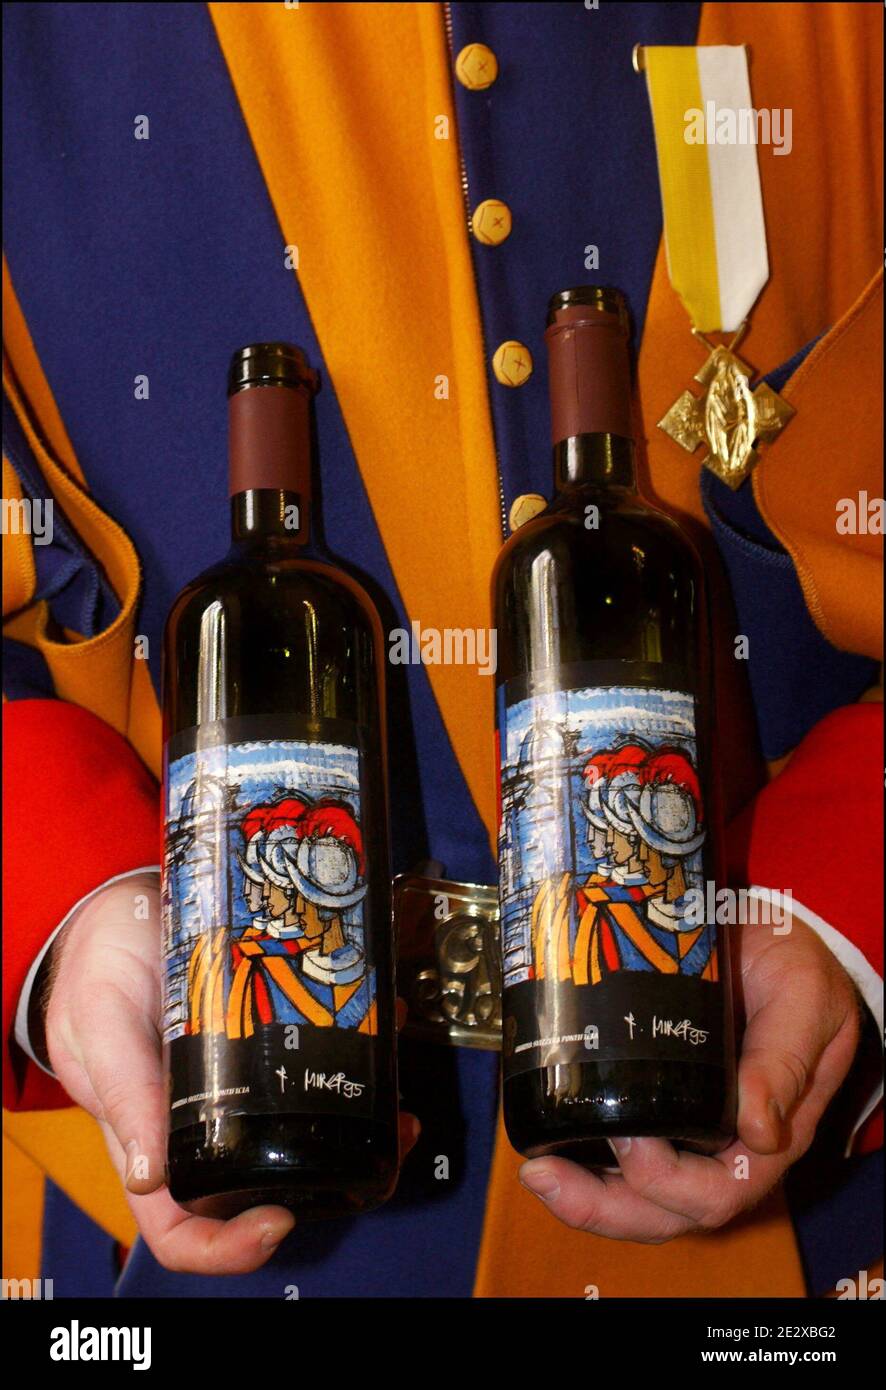 Ein Besuch im Herzen des Vatikans, des kleinsten Staates der Welt. Flasche Schweizer Gardenwein, hergestellt in der Nähe von Castelgandolfo, 20 km von Rom, Vatikan am 2003. Mai. Foto von Eric Vandeville/ABACAPRESS.COM Stockfoto